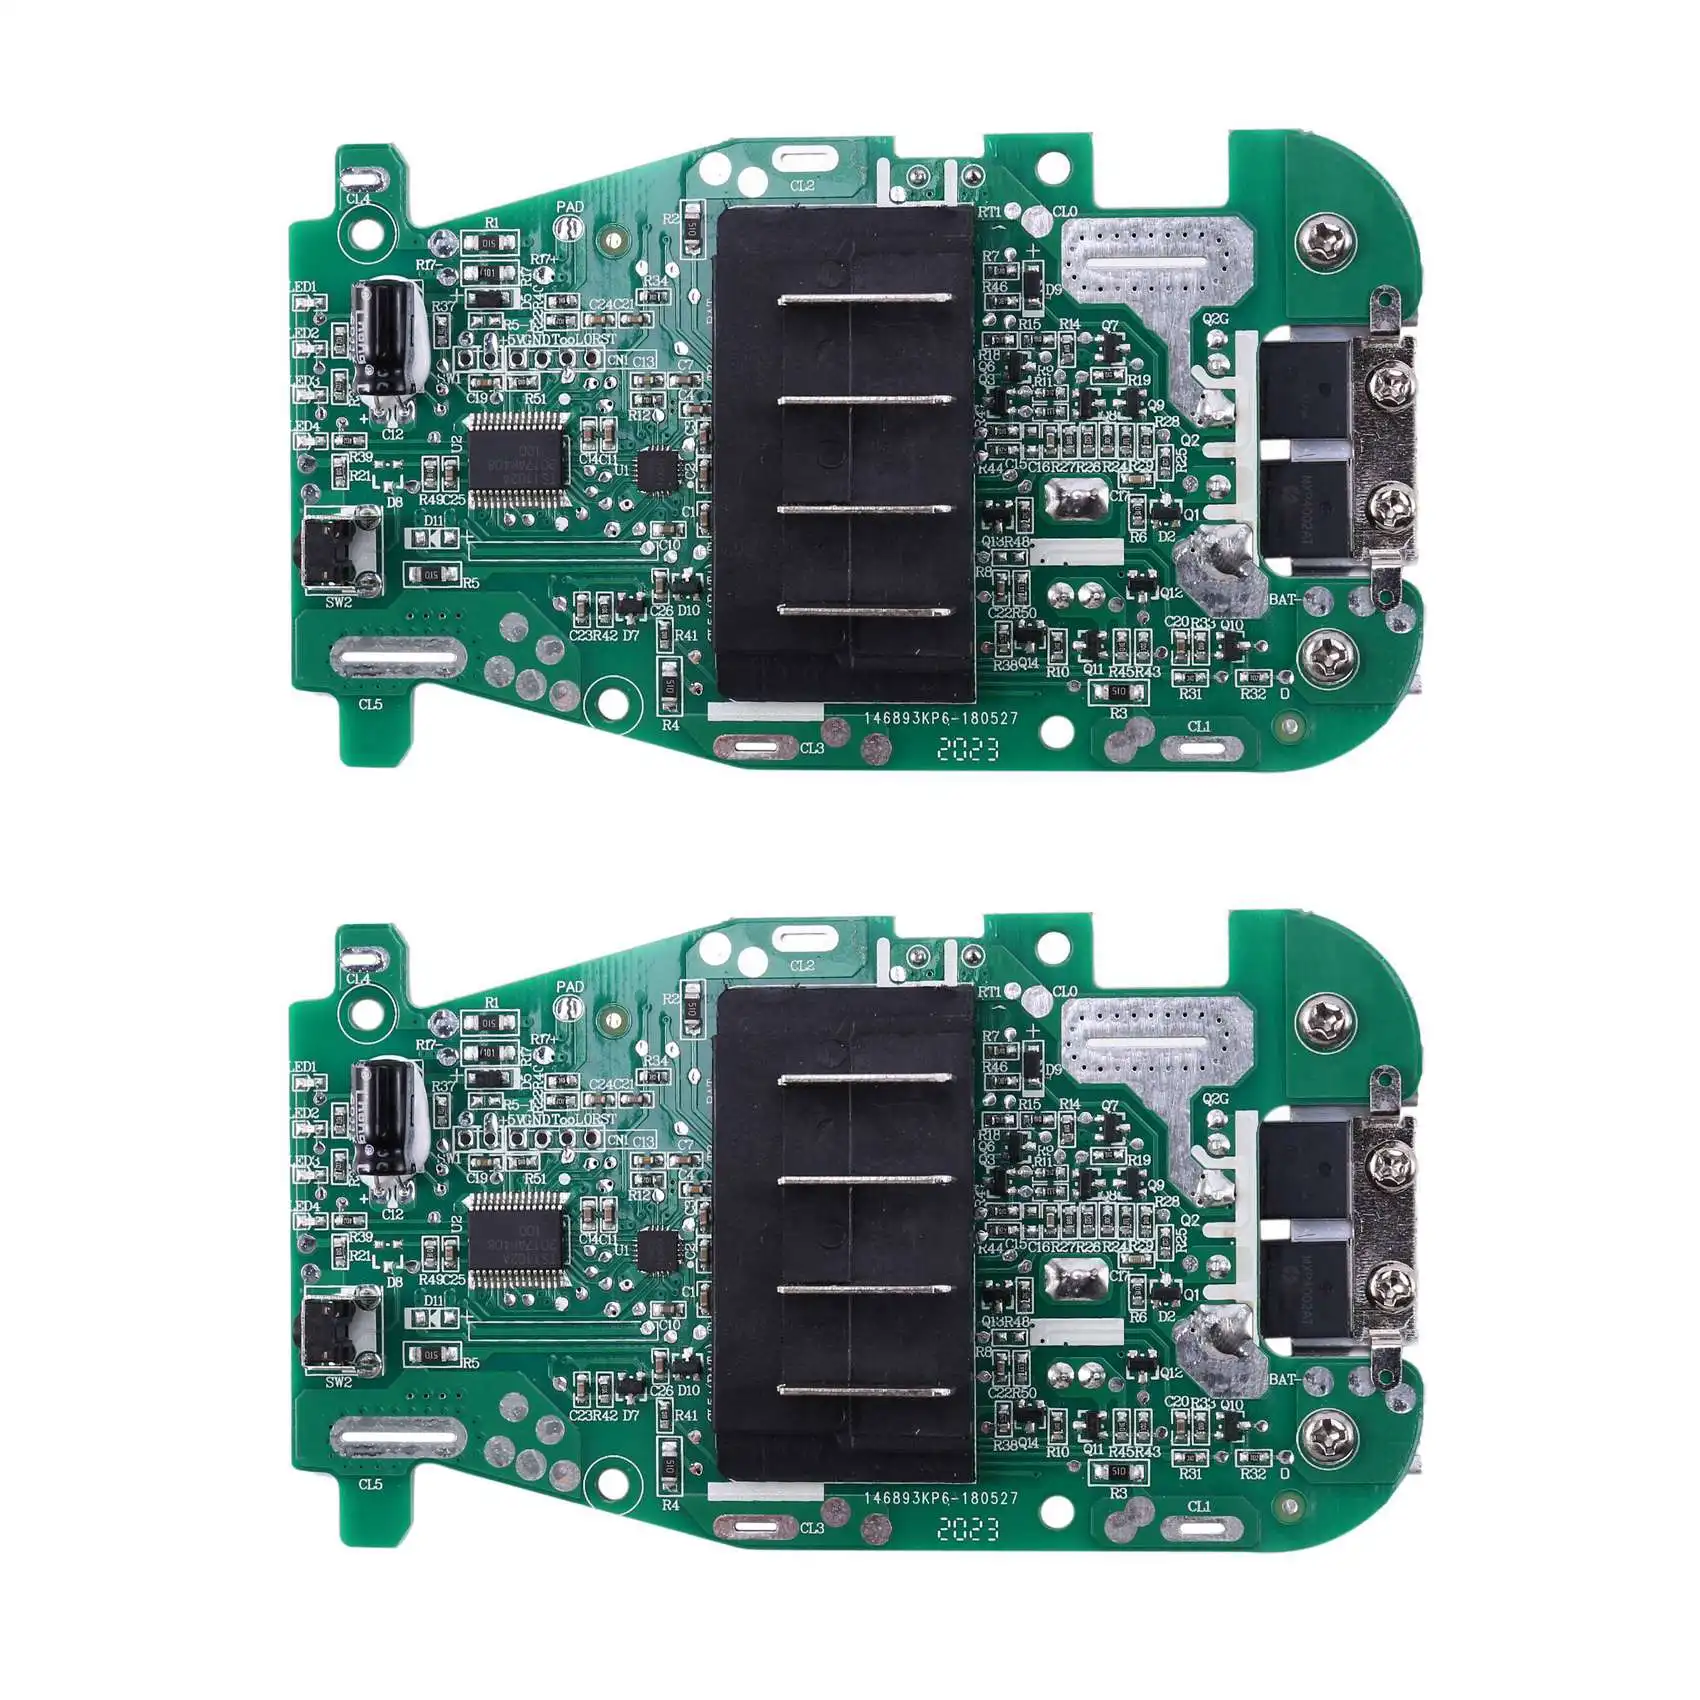 

2X Li-Ion Battery Charging Protection Circuit Board PCB for 18V RIDGID R840083 R840085 R840086 R840087 Power Tool